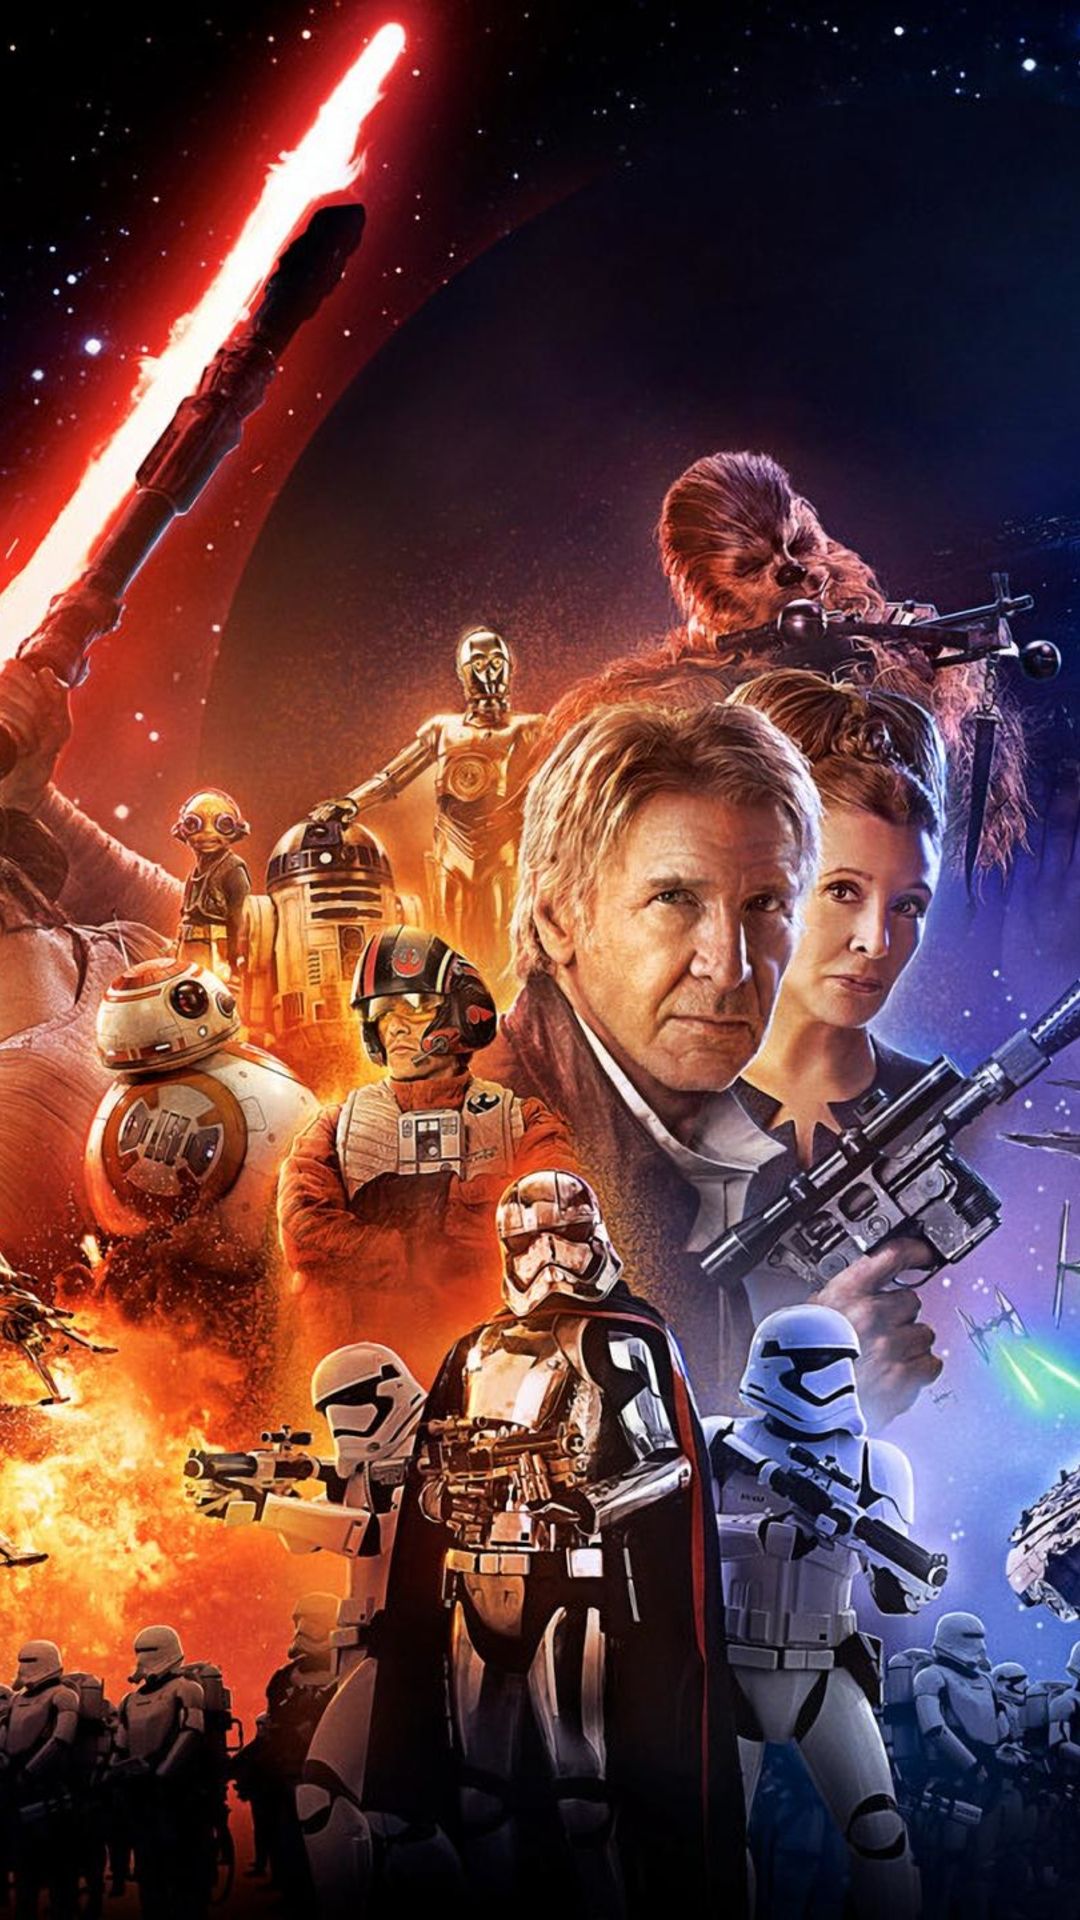 No dudes en decirnos cul de estos wallpapers de Star Wars The Force